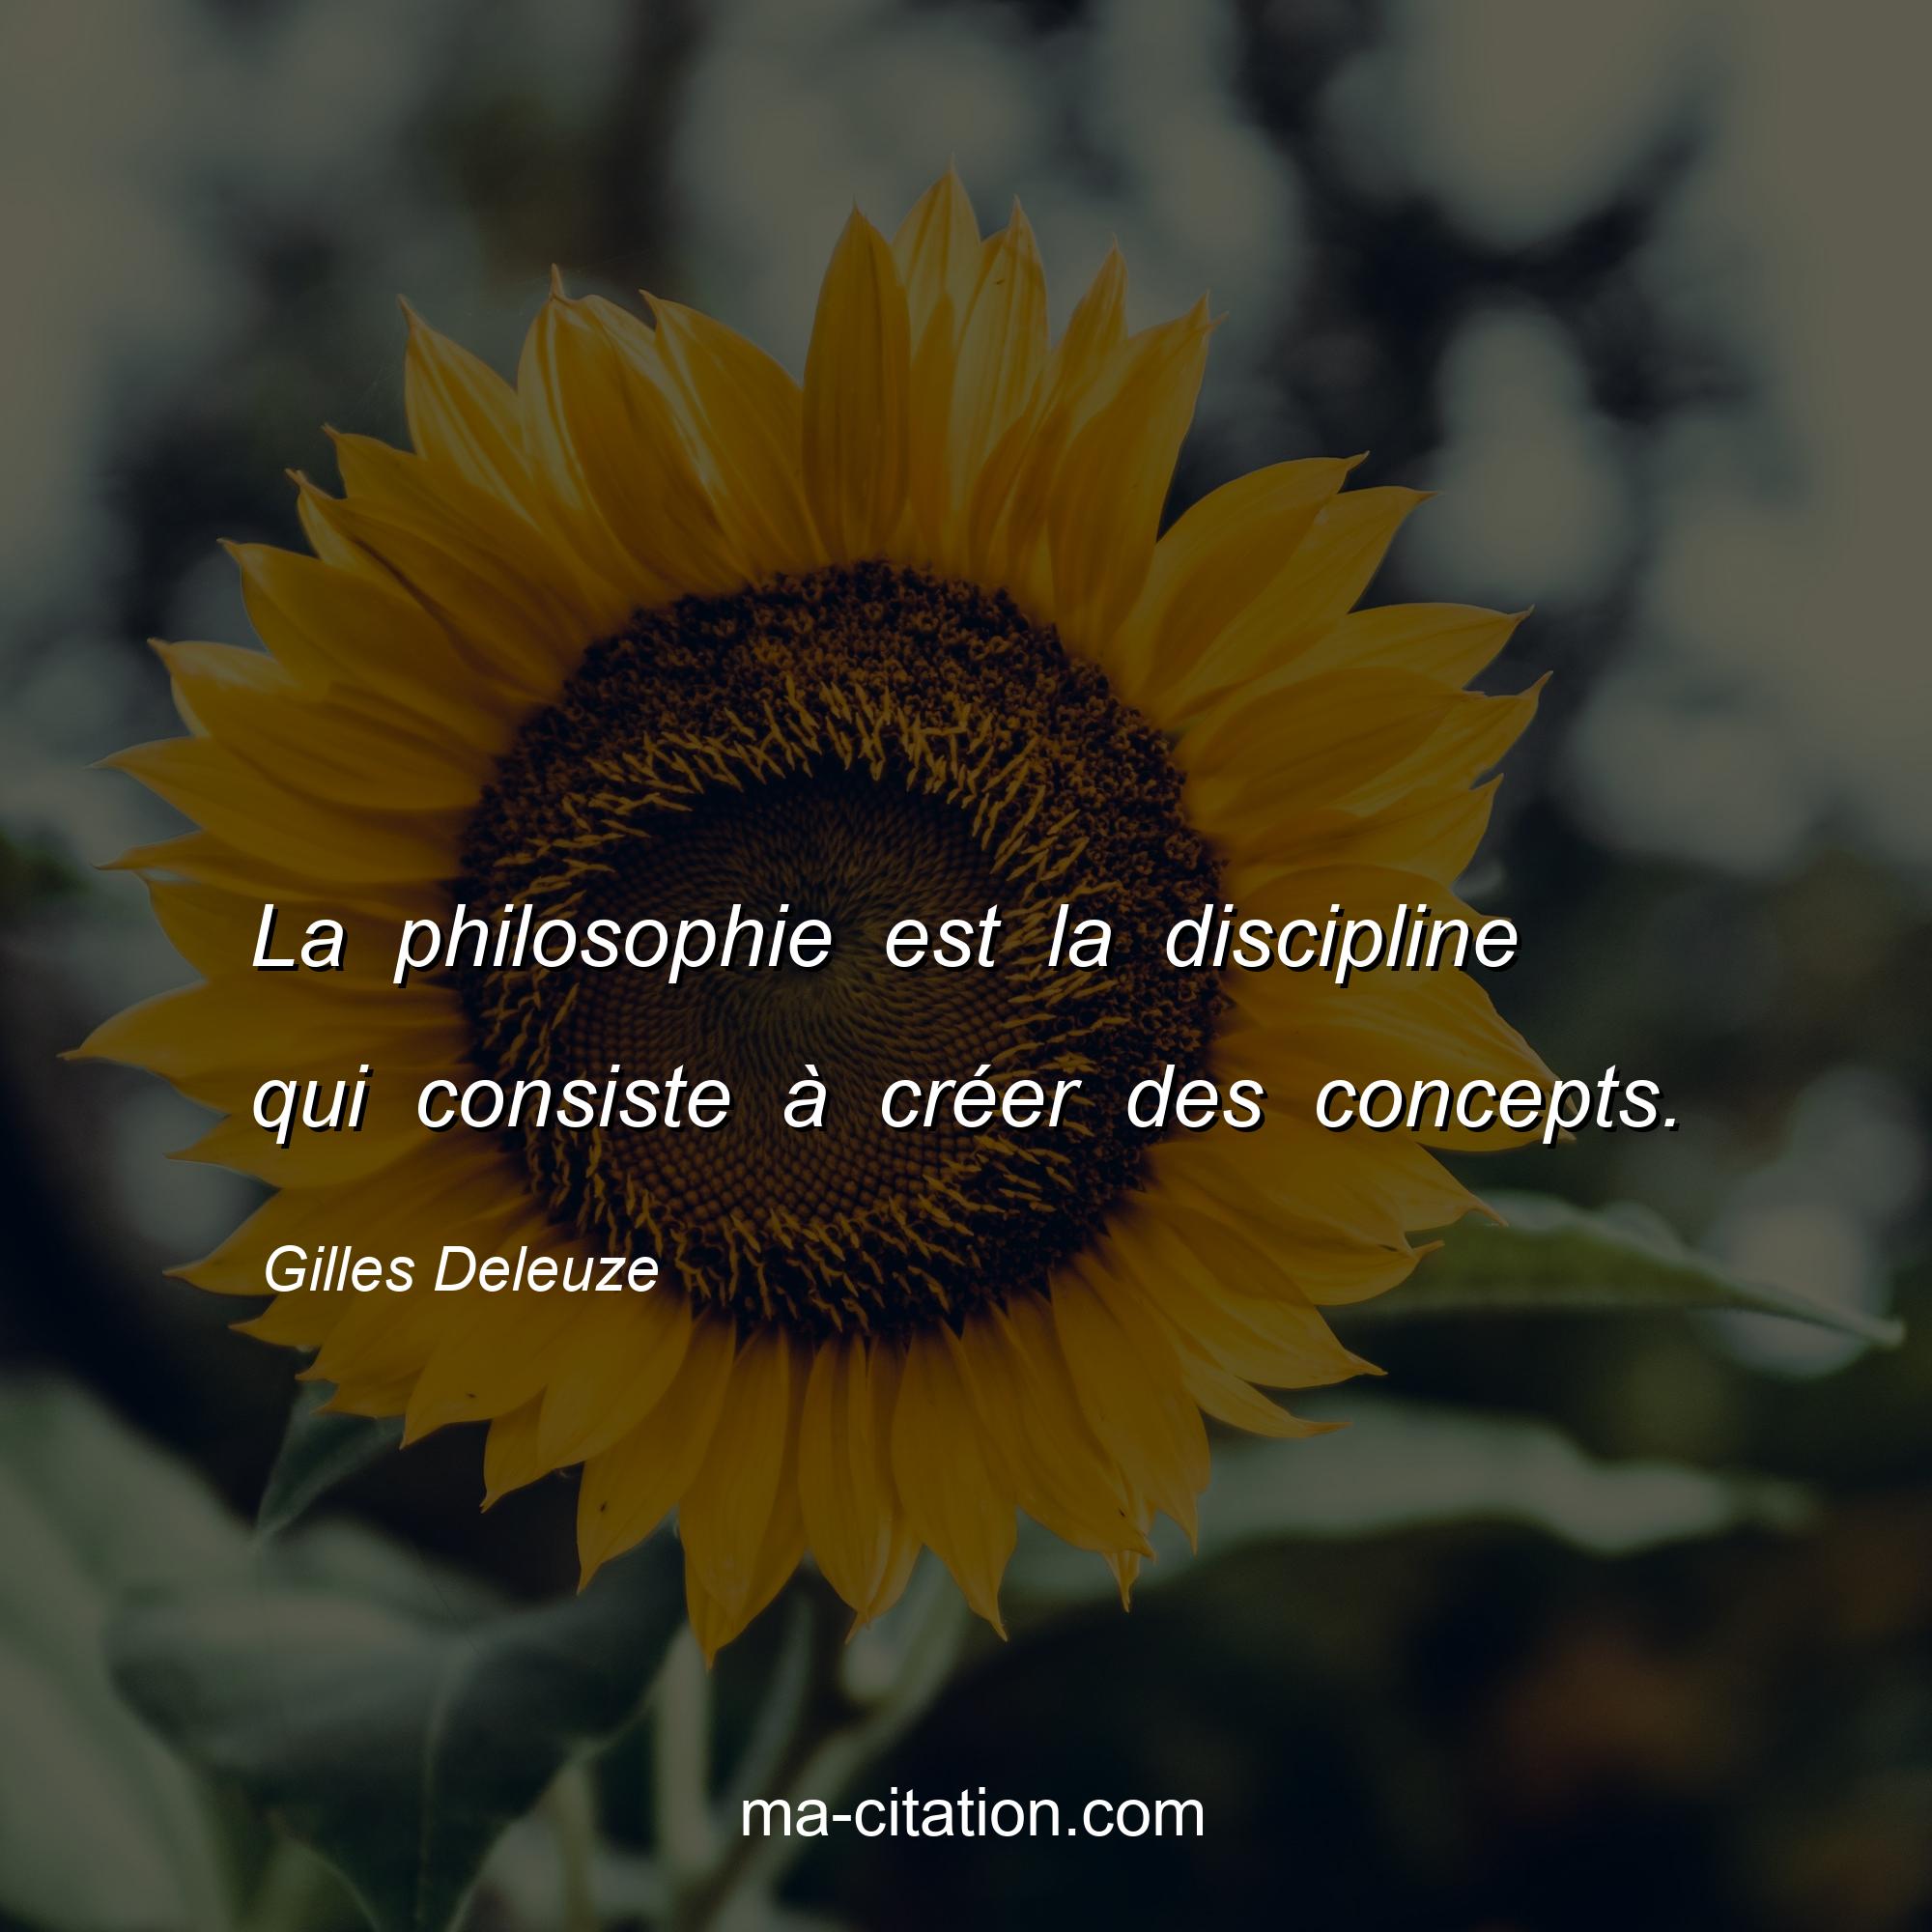 Gilles Deleuze : La philosophie est la discipline qui consiste à créer des concepts.